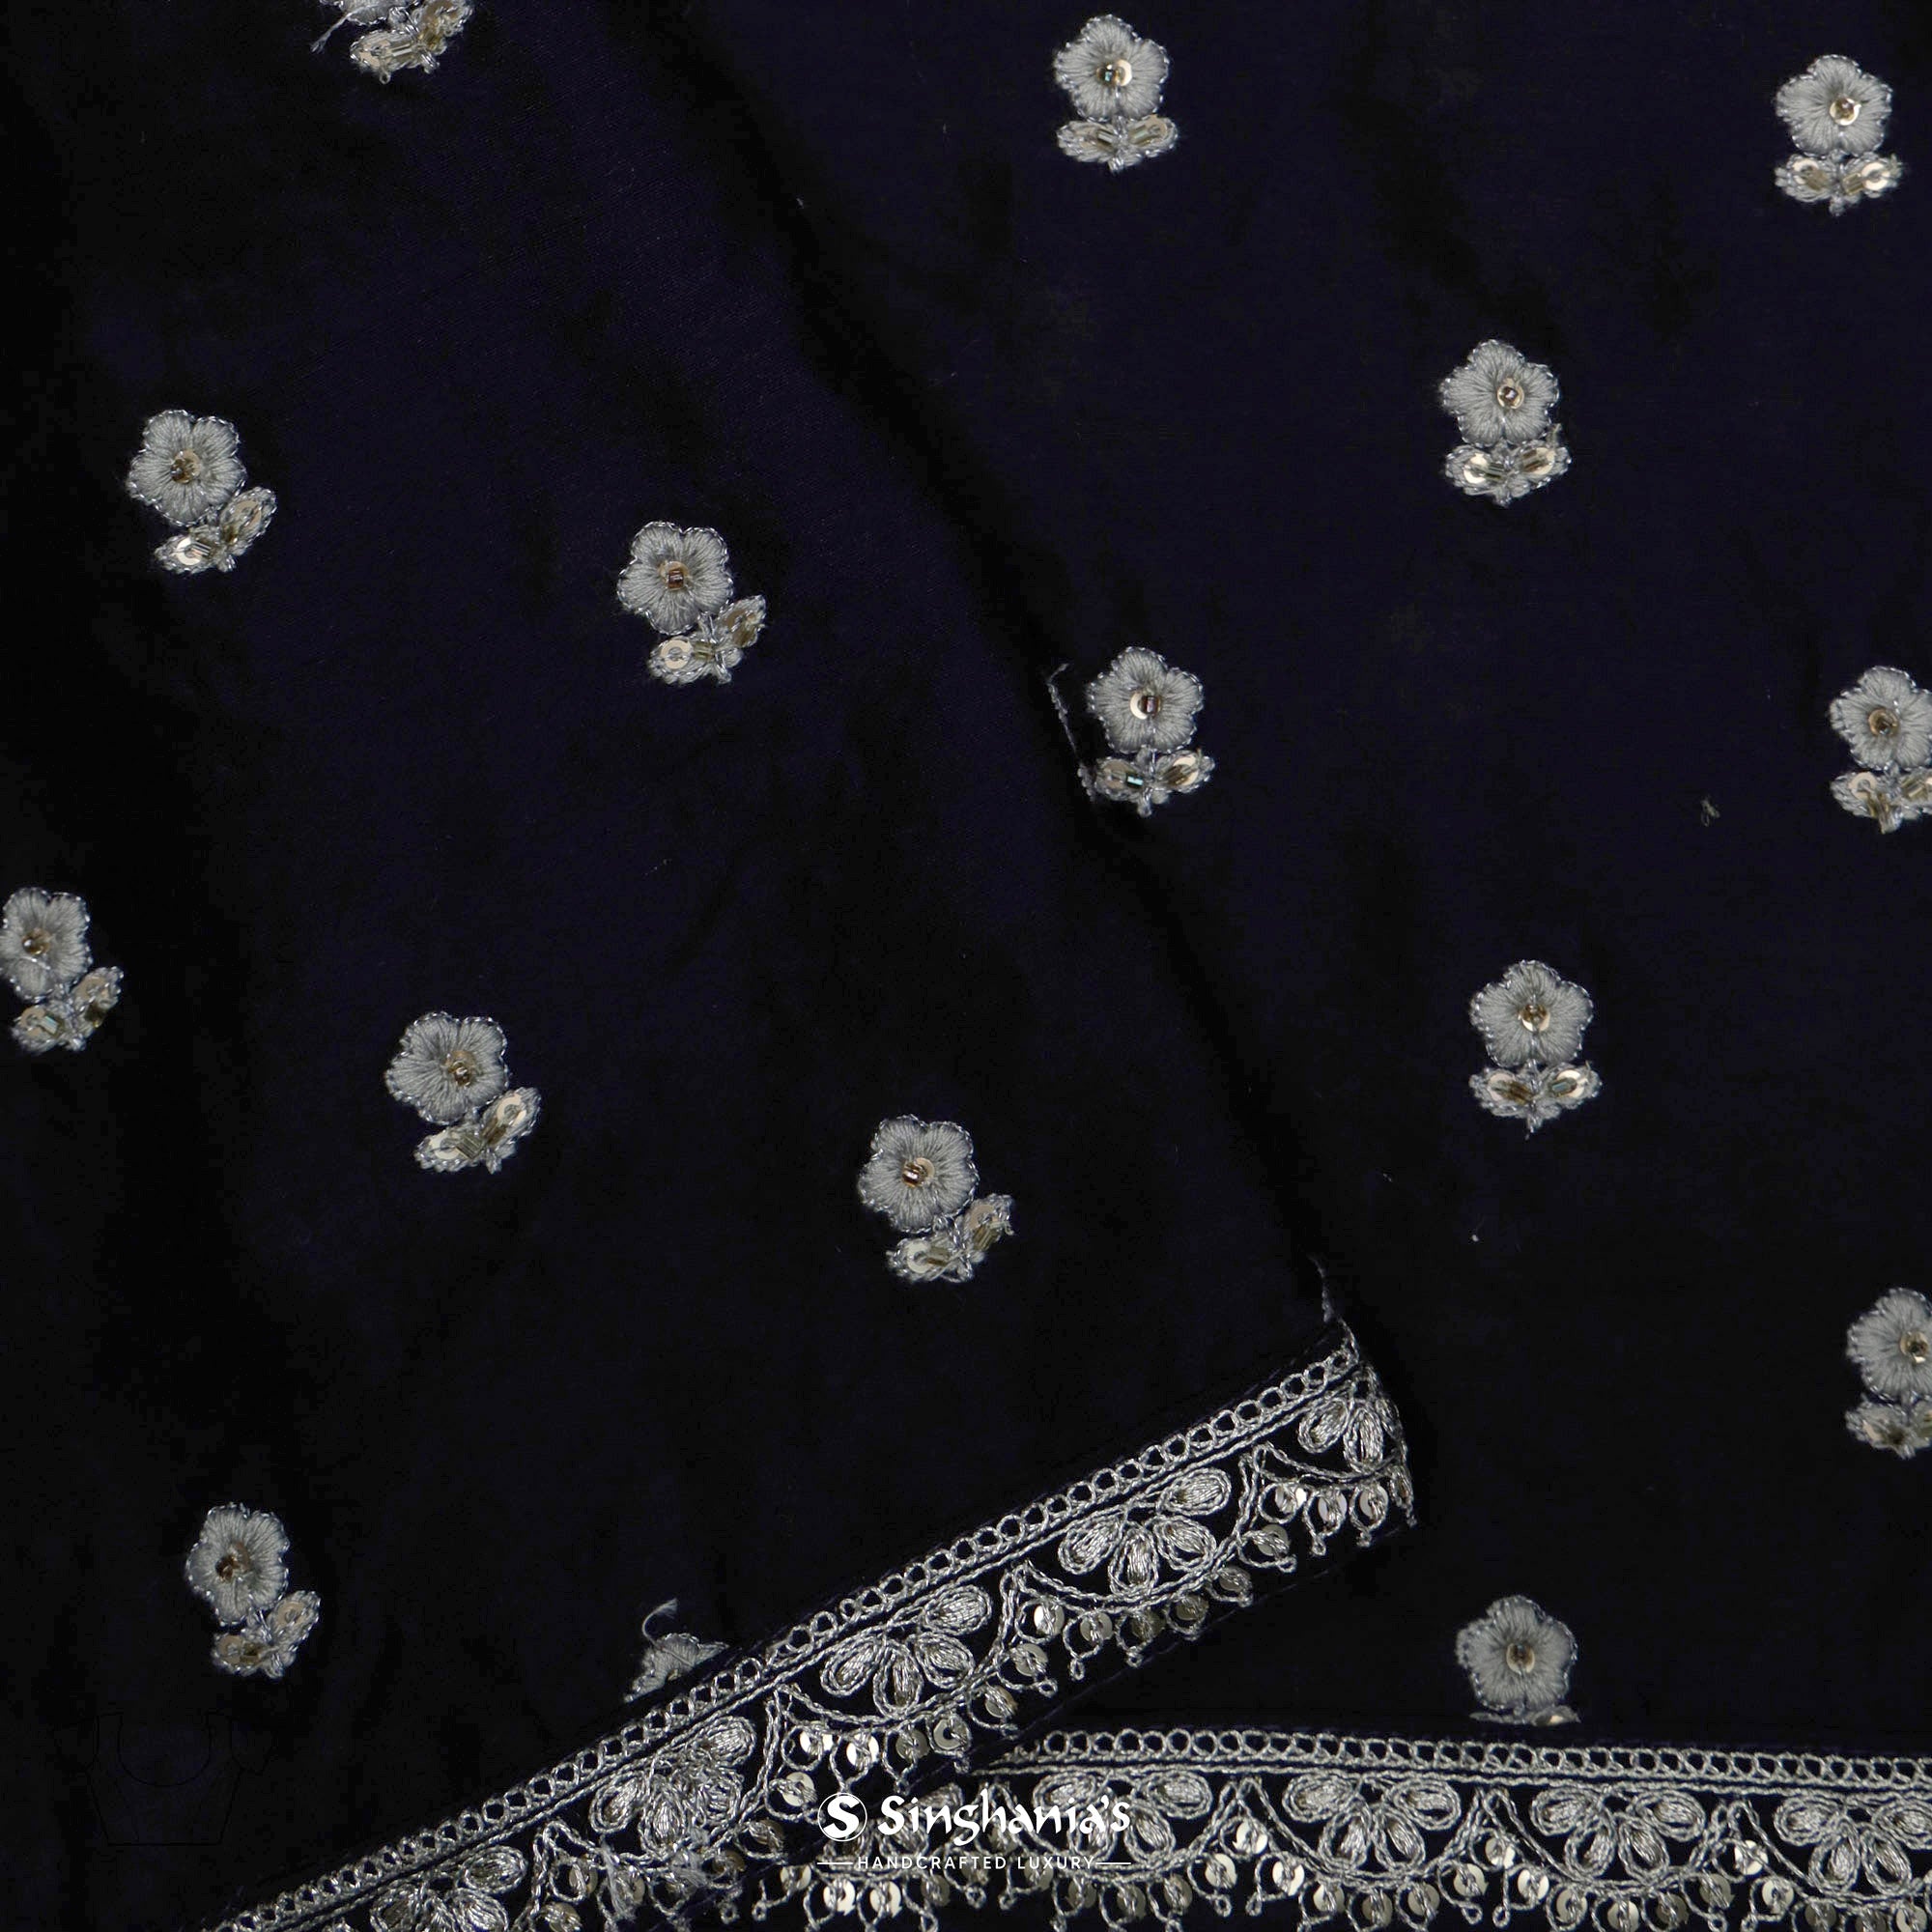 Deep Indigo Blue Printed Organza Saree With Bandhani And Leheriya Pattern